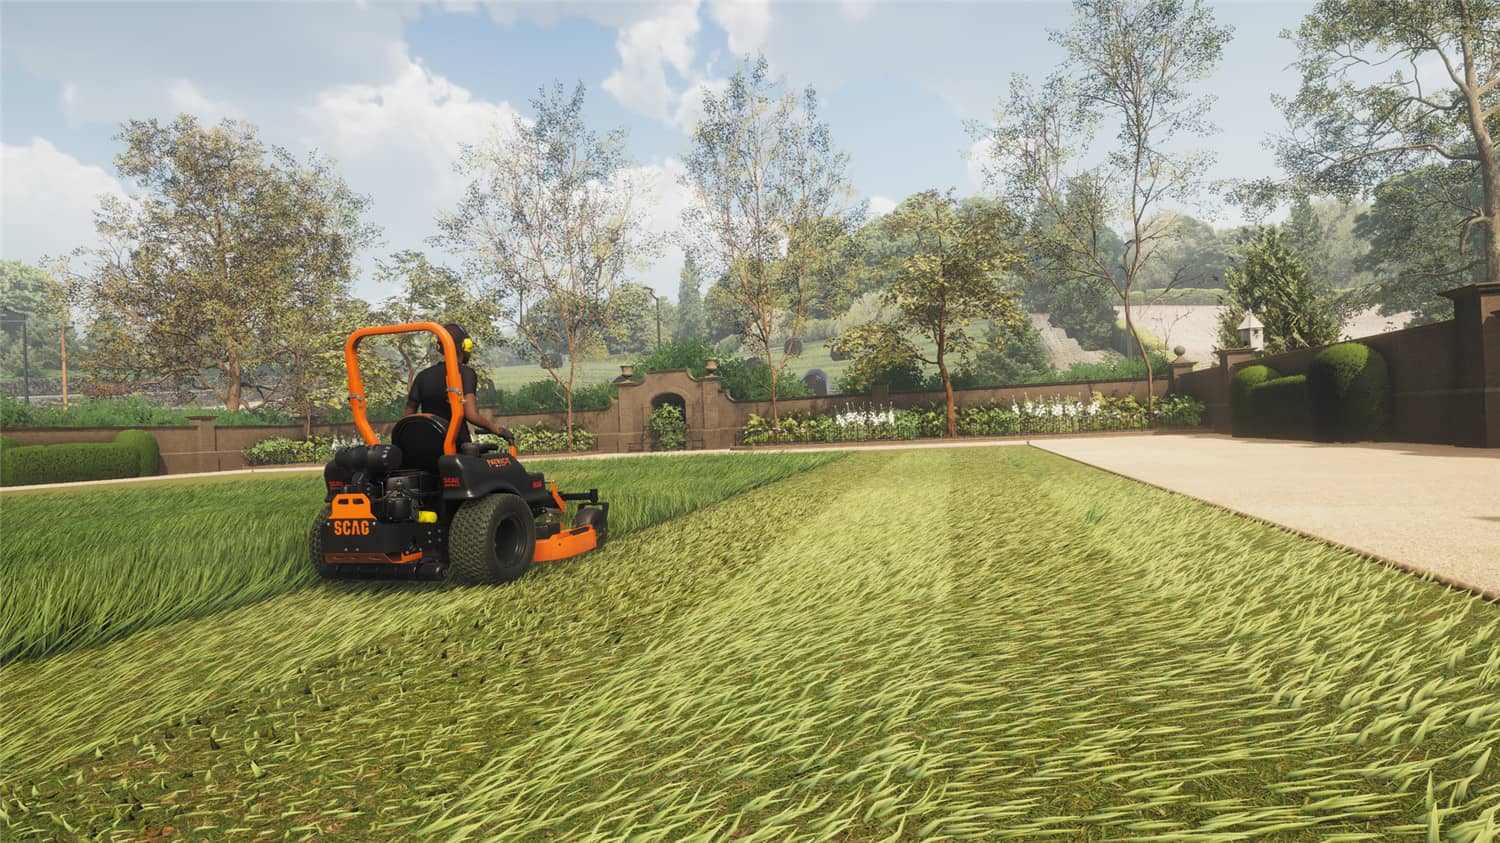 割草模拟器/Lawn Mowing Simulator插图7